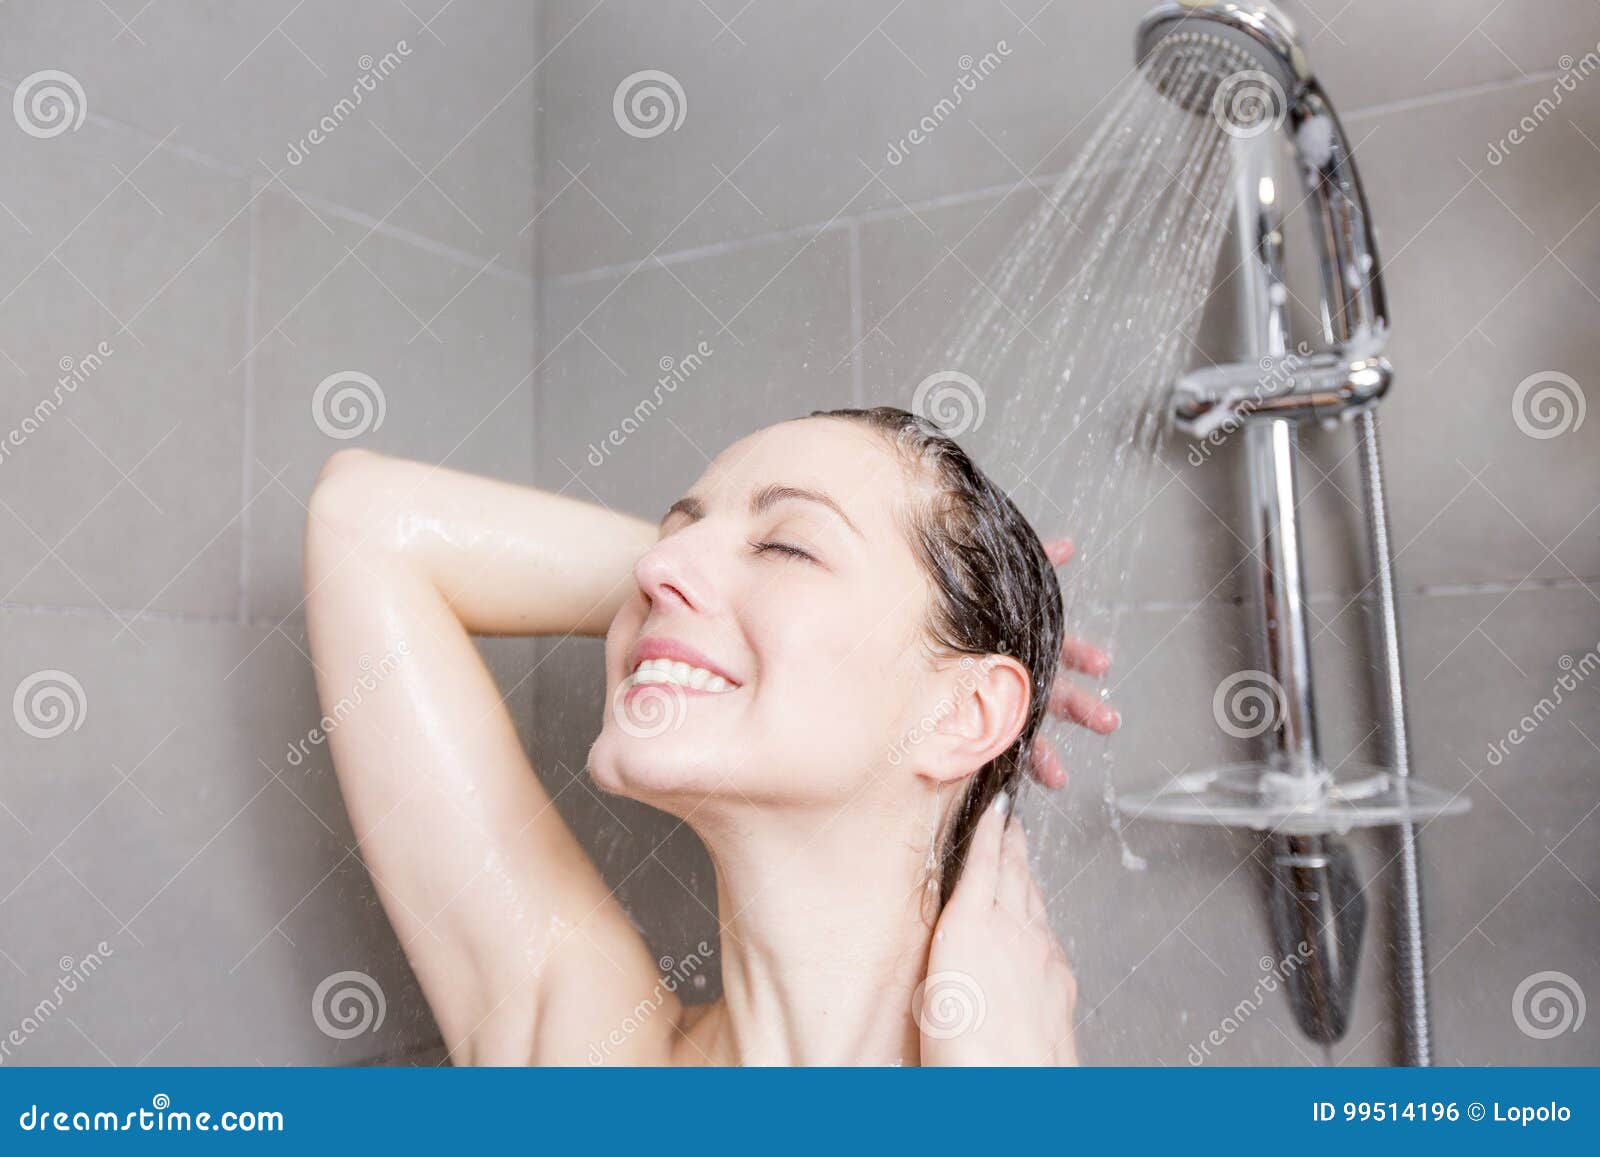 оргазм душем струей водой фото 52